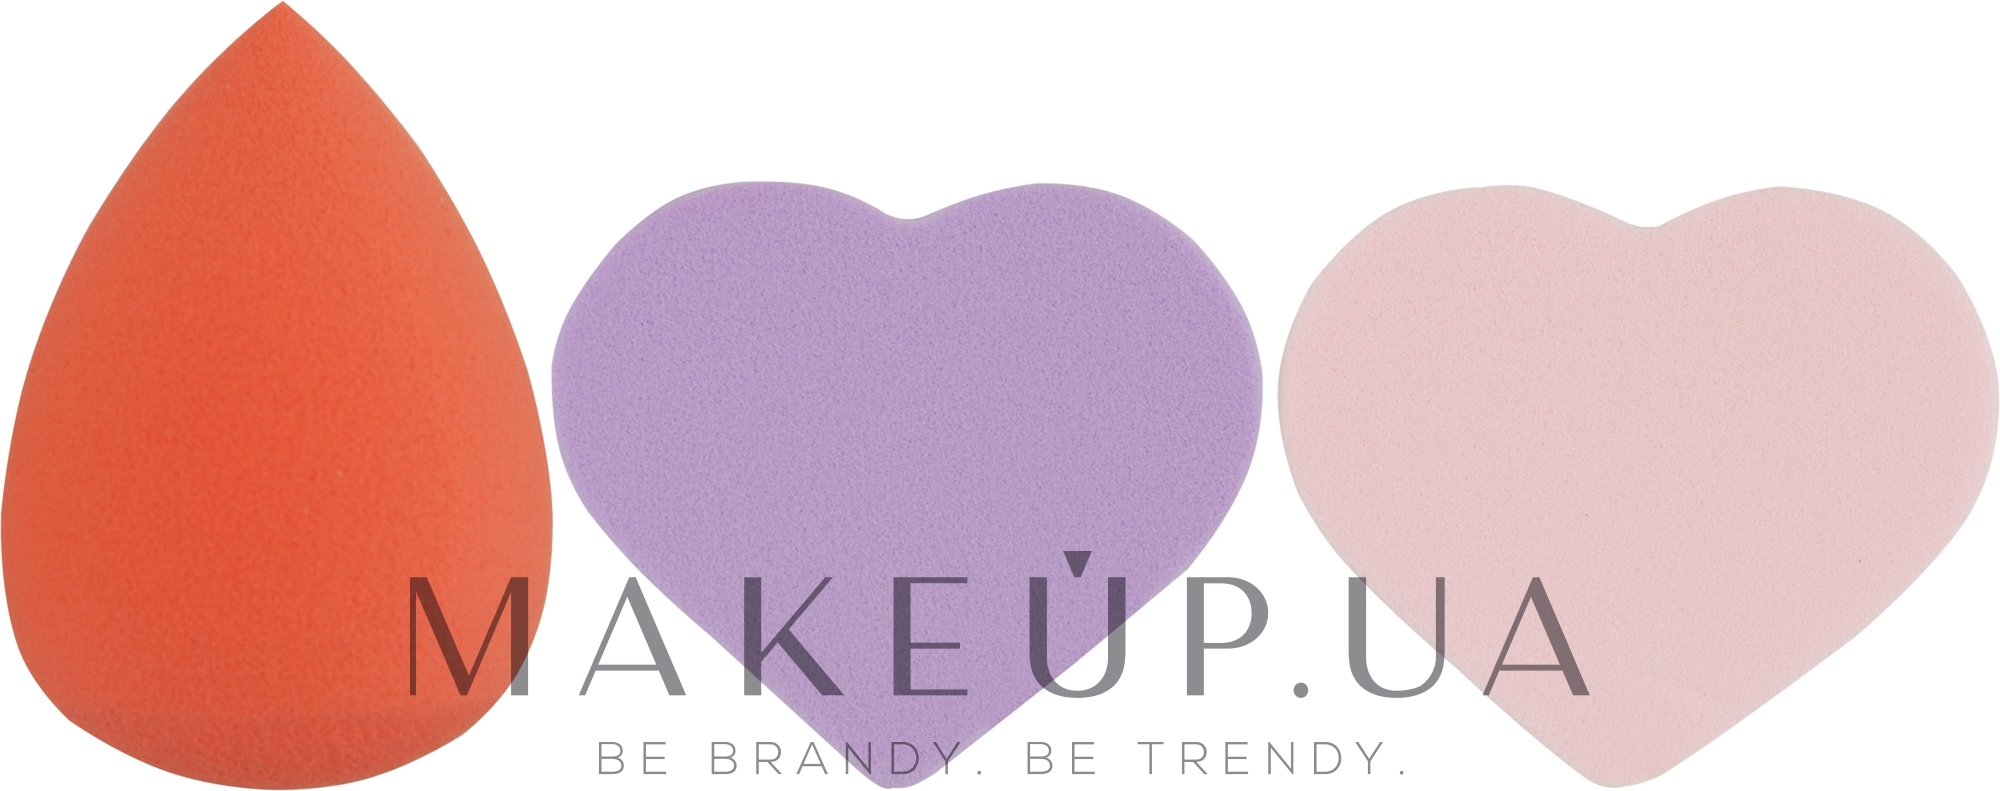 Набор спонжей для макияжа Beauty Blender, капля + 2 сердце, MIX (фиолетовый + розовый + оранжевый) - Puffic Fashion PF-229 — фото 3шт